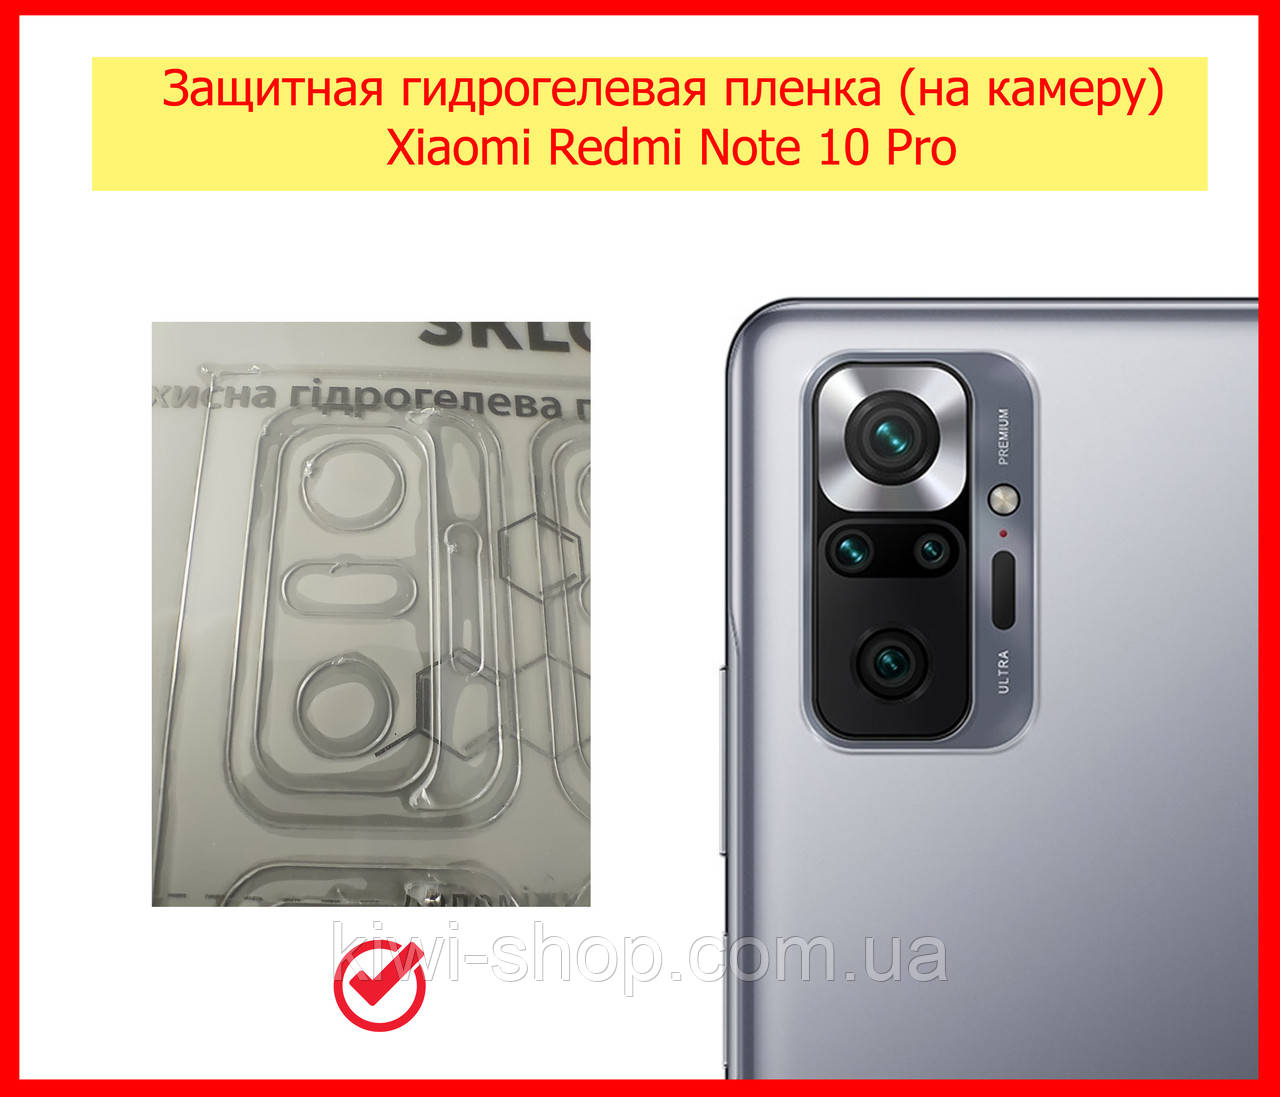 

Защитная гидрогелевая пленка на камеру для Xiaomi Redmi Note 10 Pro, гнучке скло на камеру редмі нот 10 про, Прозрачный